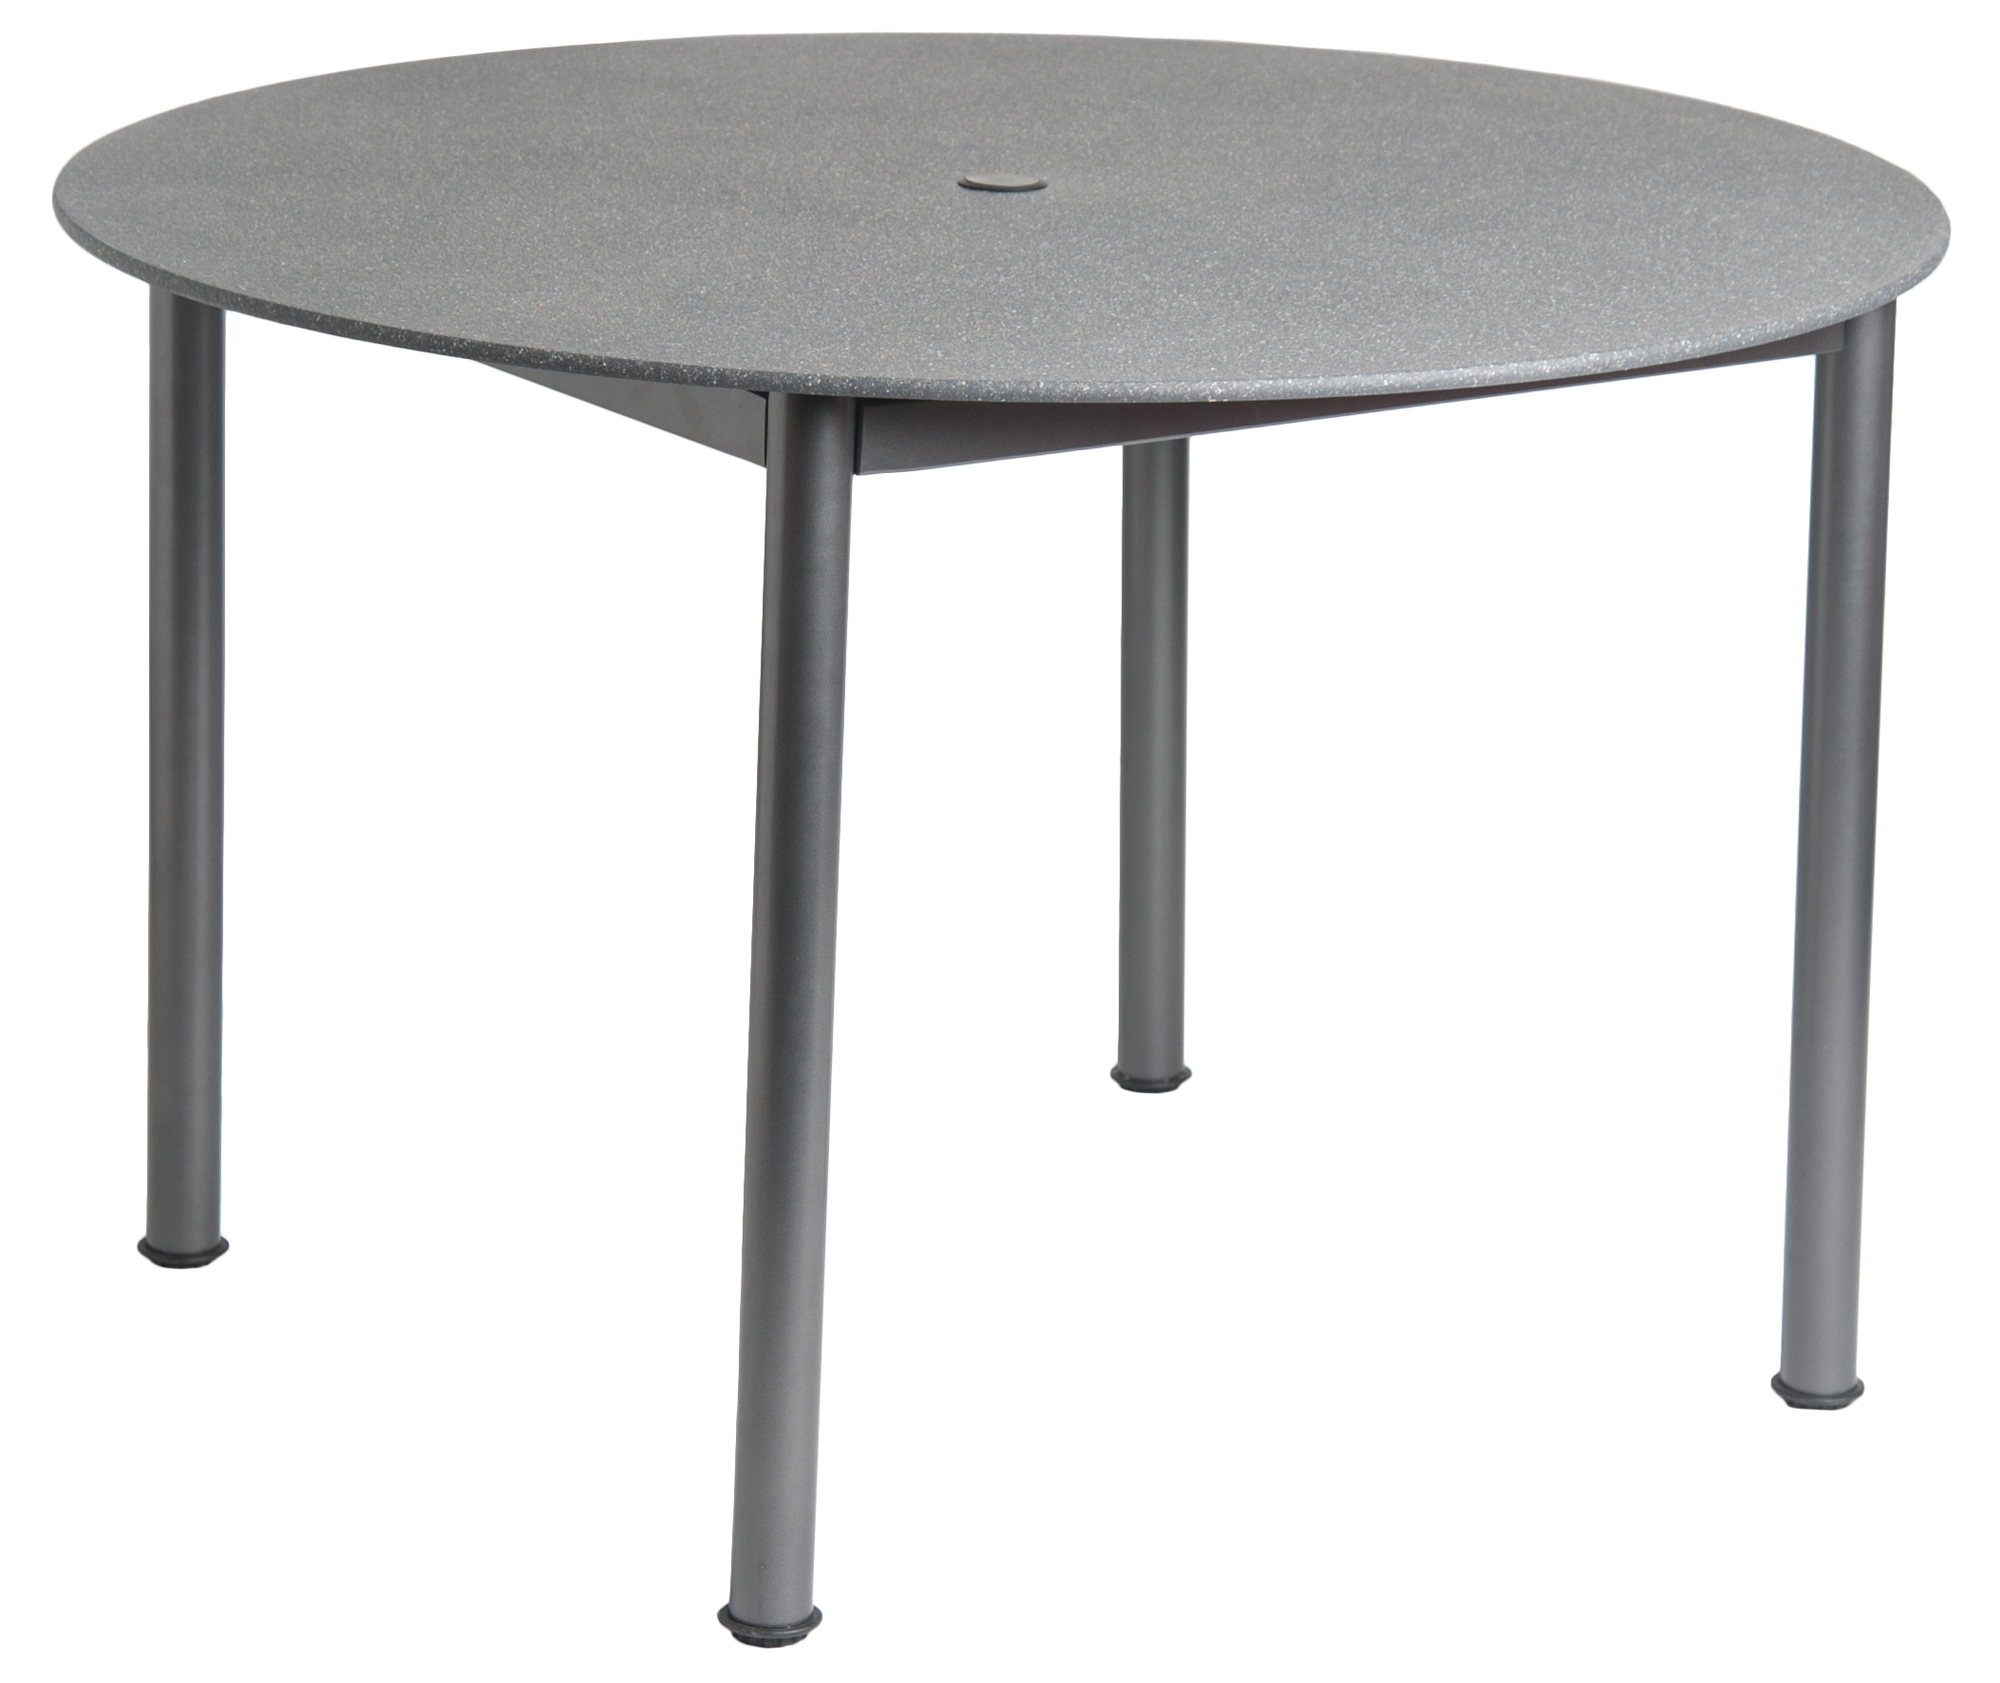 Portofino Stone Top Table 1.18m